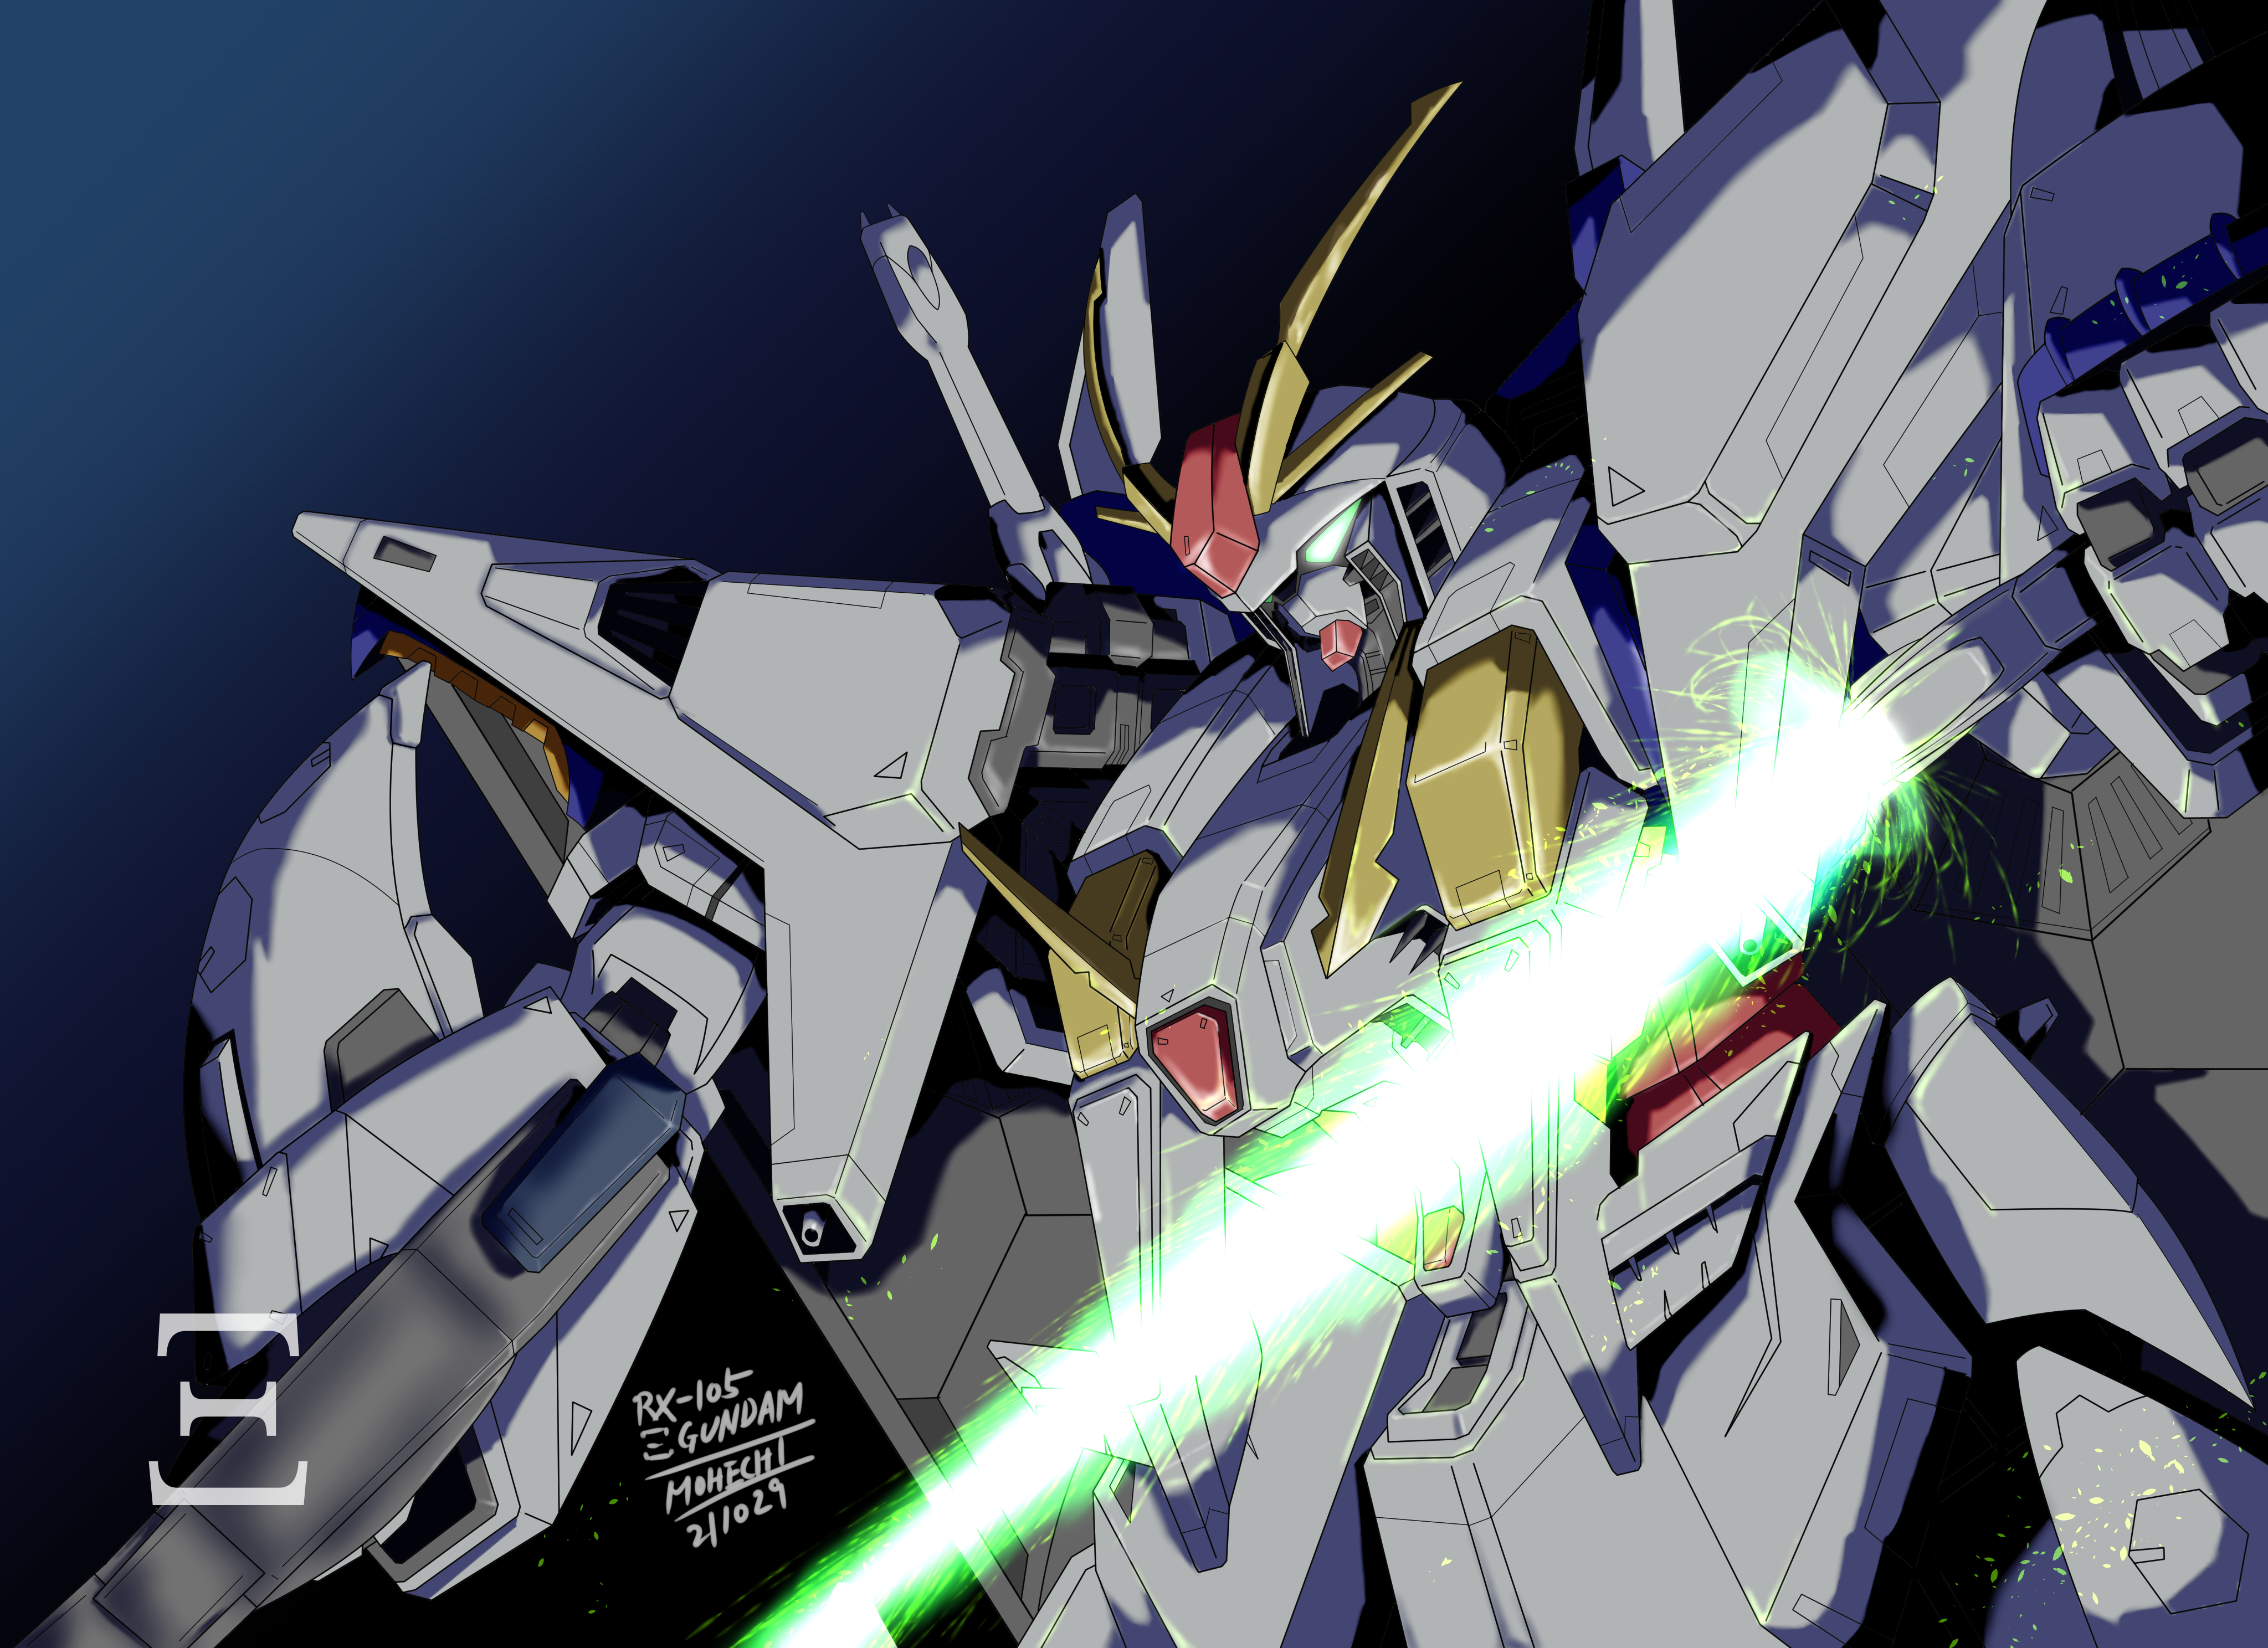 Anime 4094x2975 anime mechs Super Robot Taisen Mobile Suit Gundam Hathaway Gundam Ξ Gundam artwork digital art fan art